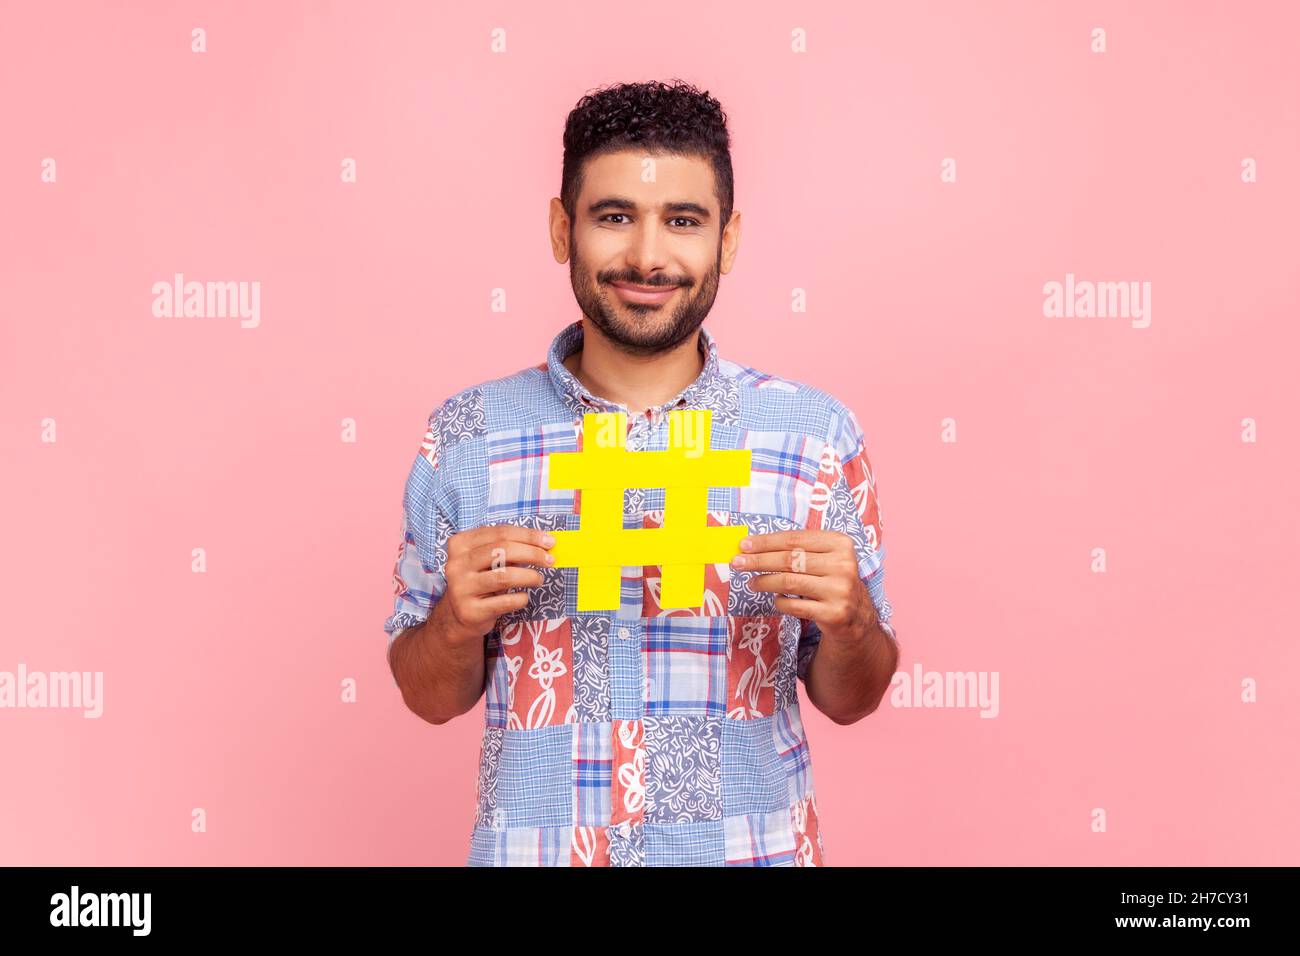 Beliebtheit in sozialen Medien. Porträt eines glücklichen dunkelhaarigen Mannes mit Bart in einem legeren Hemd mit großem gelben Hashtag-Schild und Blick auf die Kamera. Innenaufnahme des Studios isoliert auf rosa Hintergrund. Stockfoto